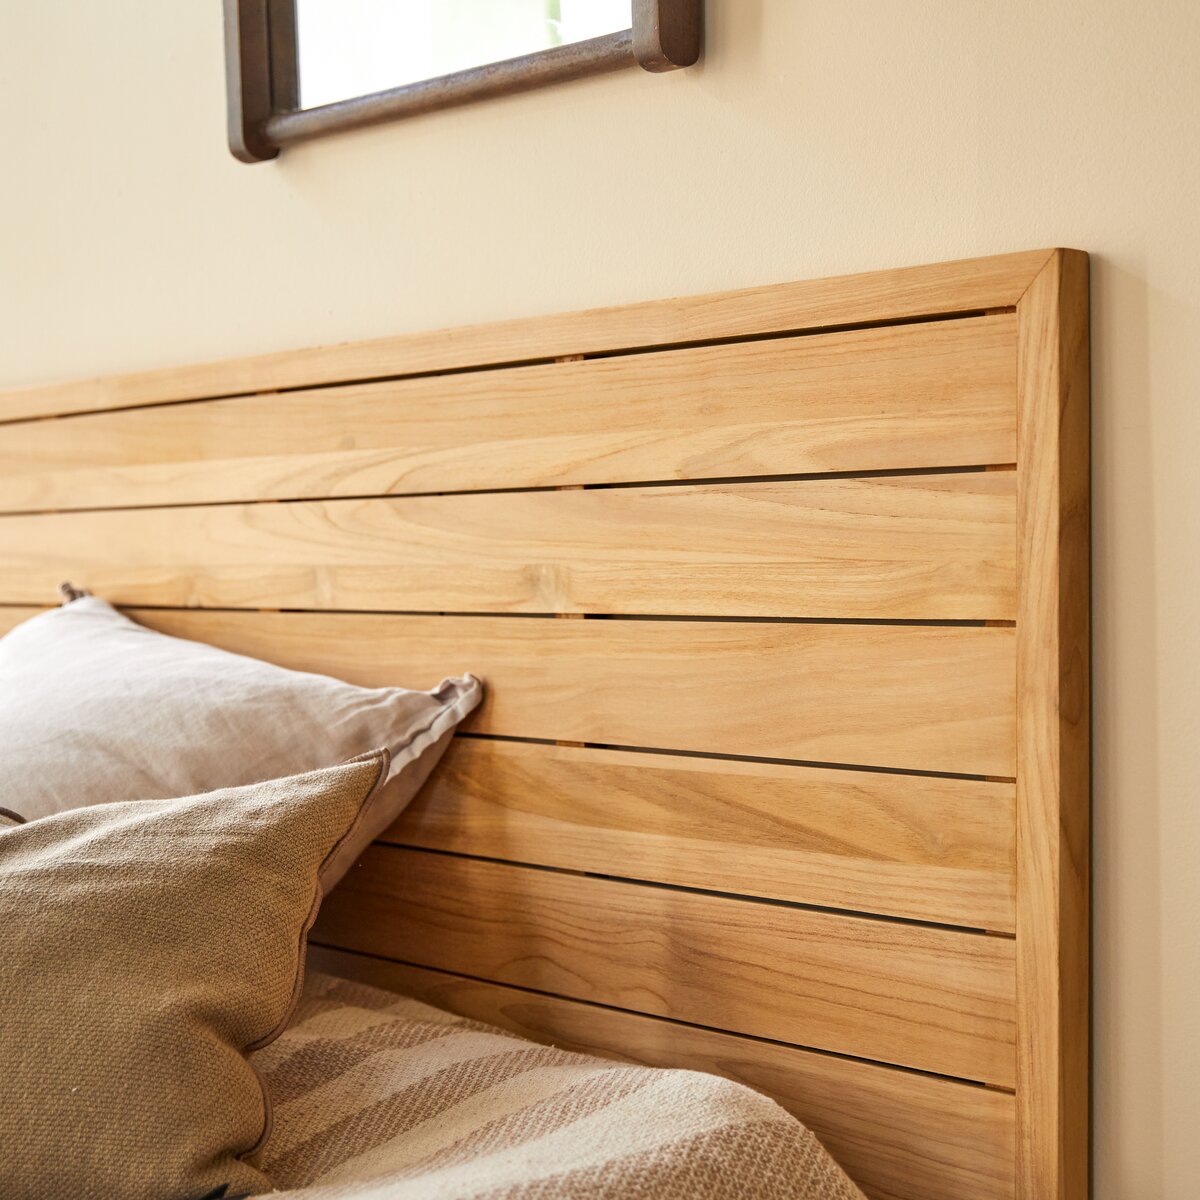 Testata letto in legno flotté 180cm - Arredo camera letto - Tikamoon